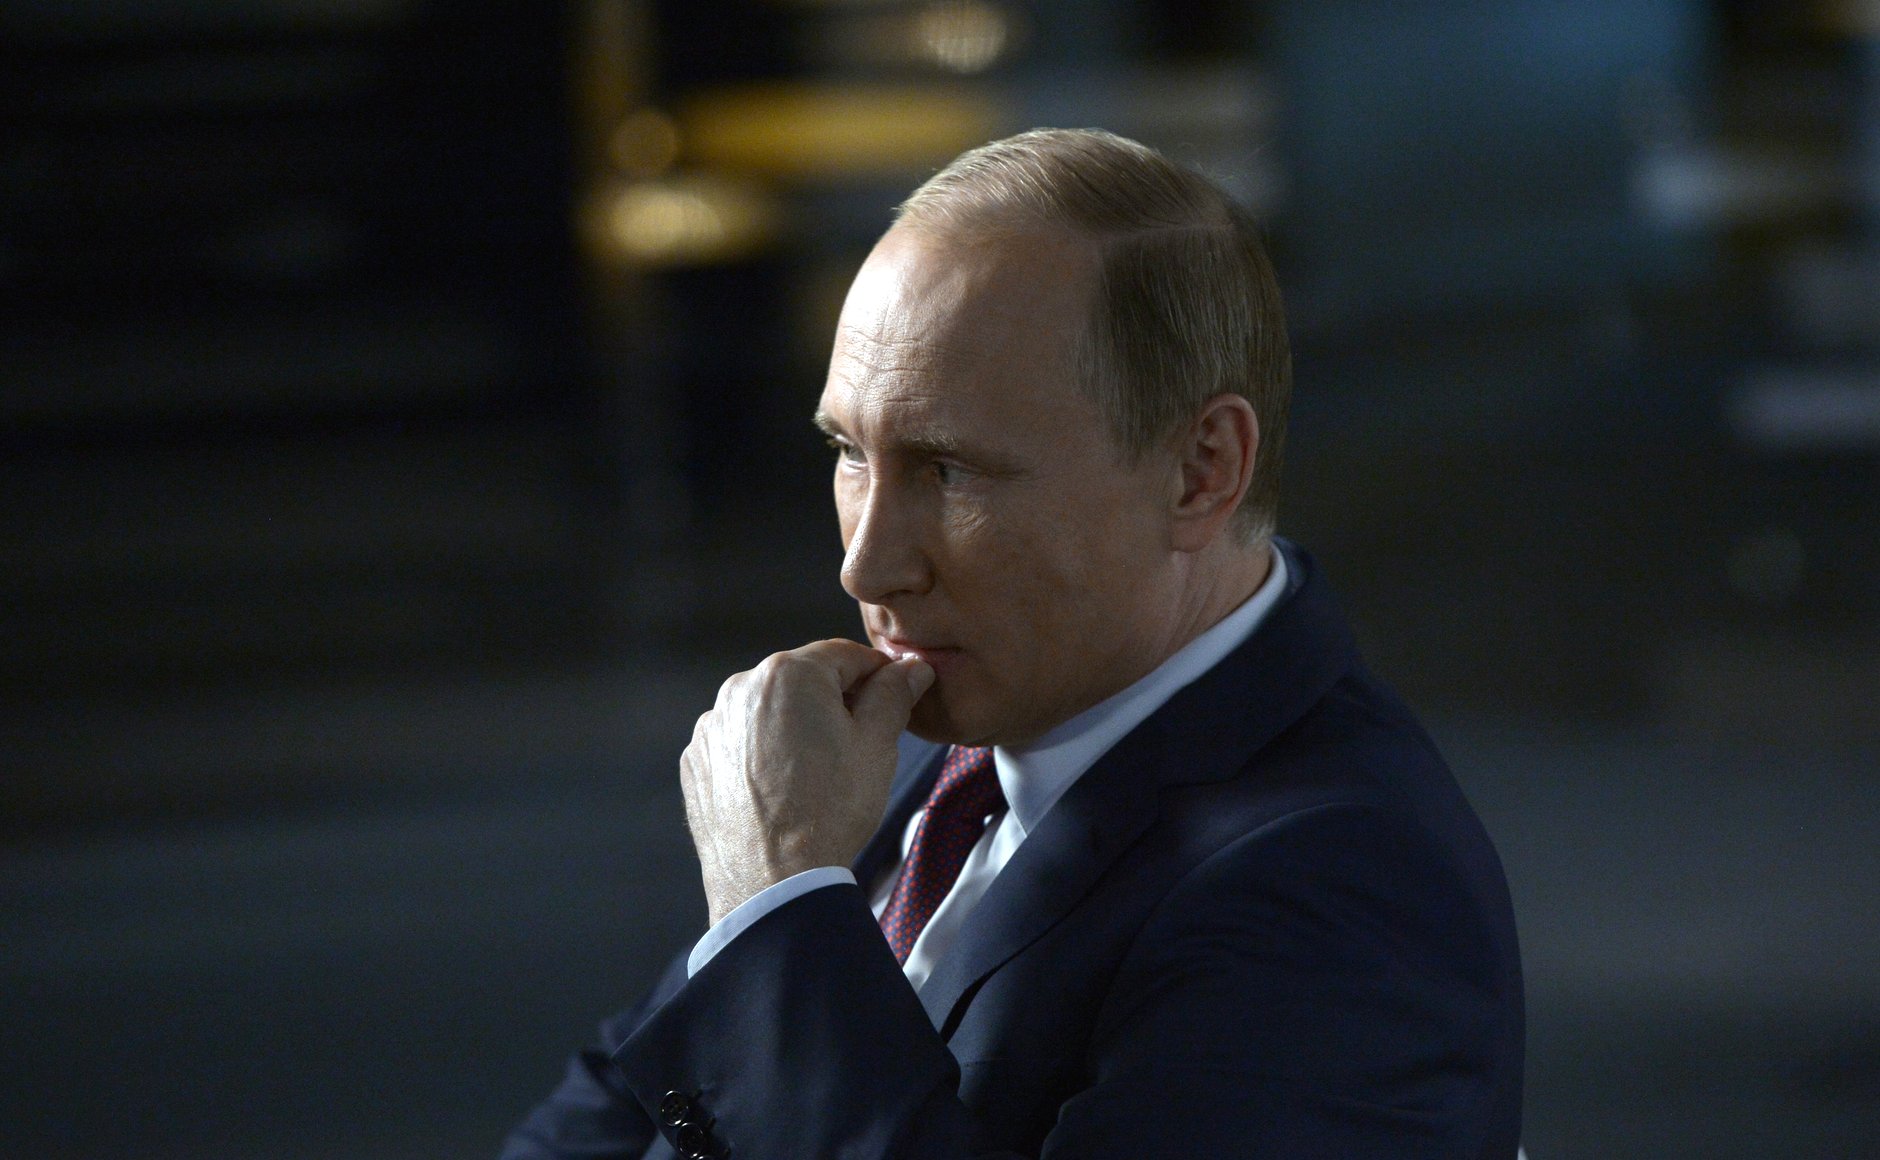 "Методы ФСБ не поменялись: теракт, убийство, шантаж, донос и война", - Гай рассказал, зачем Путину теракты в России